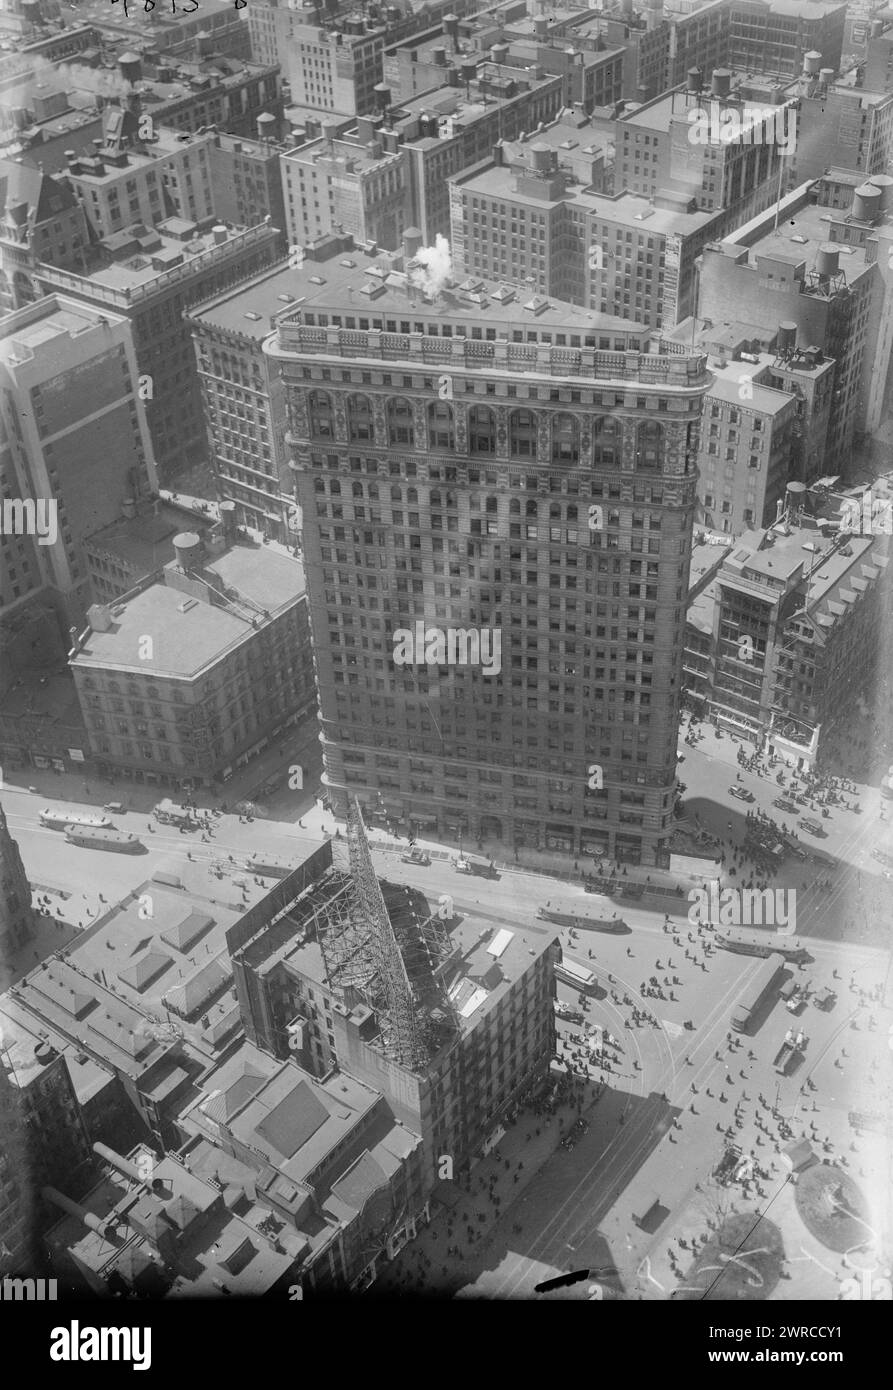 De met. Bldg., la photographie montre une vue aérienne de Madison Square et une arche de victoire temporaire, prise de la tour de la Metropolitan Life Insurance Company., entre env. 1915 et env. 1920, négatifs en verre, 1 négatif : verre Banque D'Images